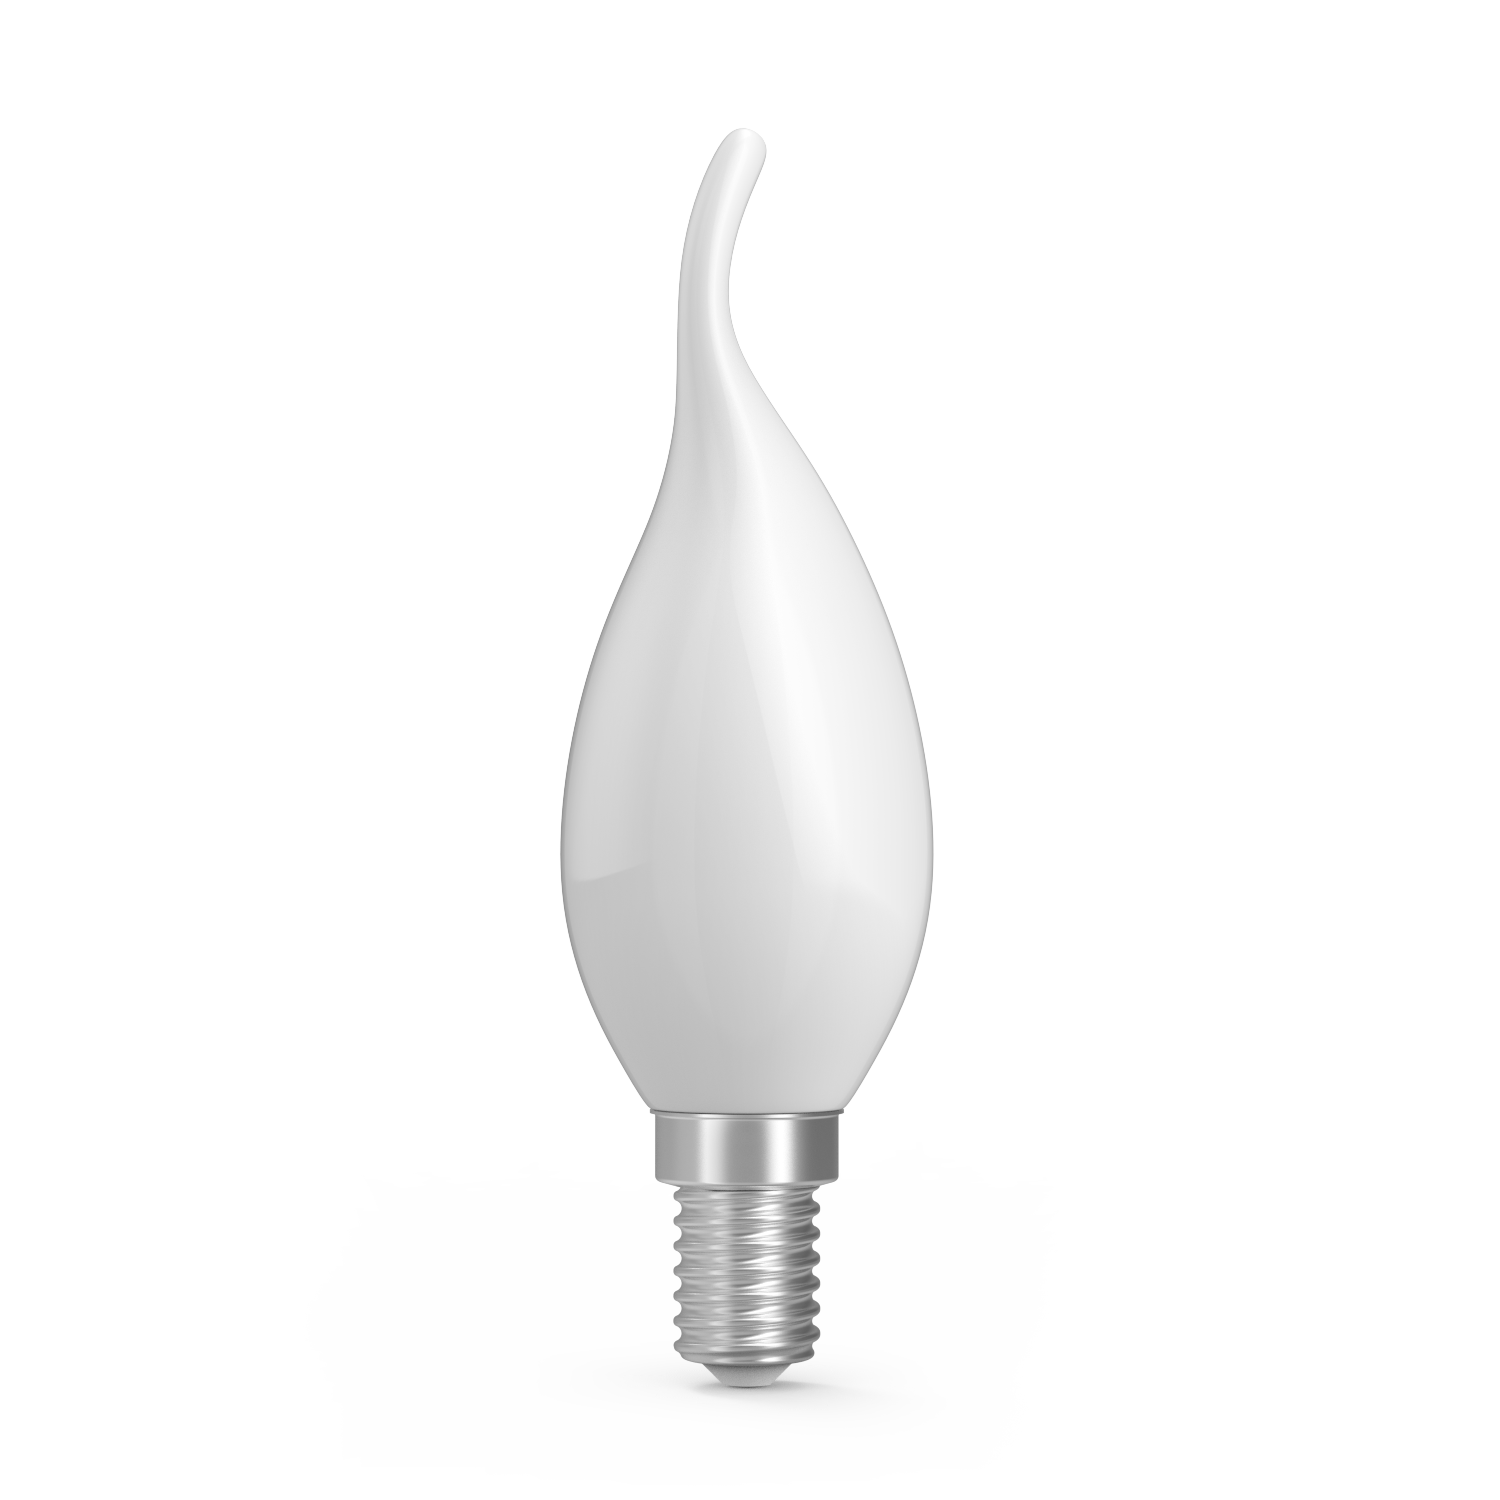 Лампа Gauss Basic Filament Свеча на ветру 4,5W 380lm 2700К Е14 milky  LED 1/10/50